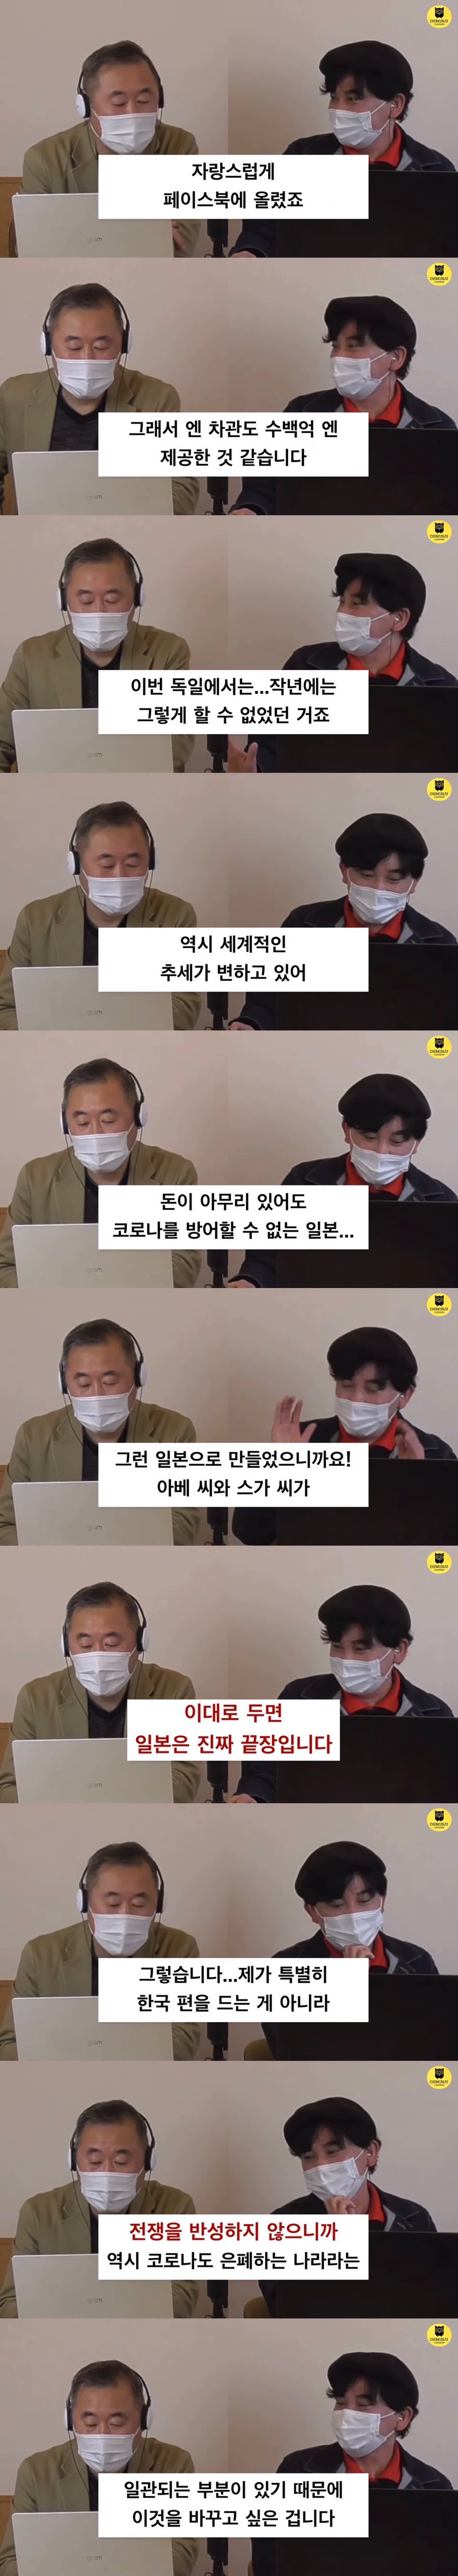 위안부 논란 개입말라는 한국인들이 있는 이유